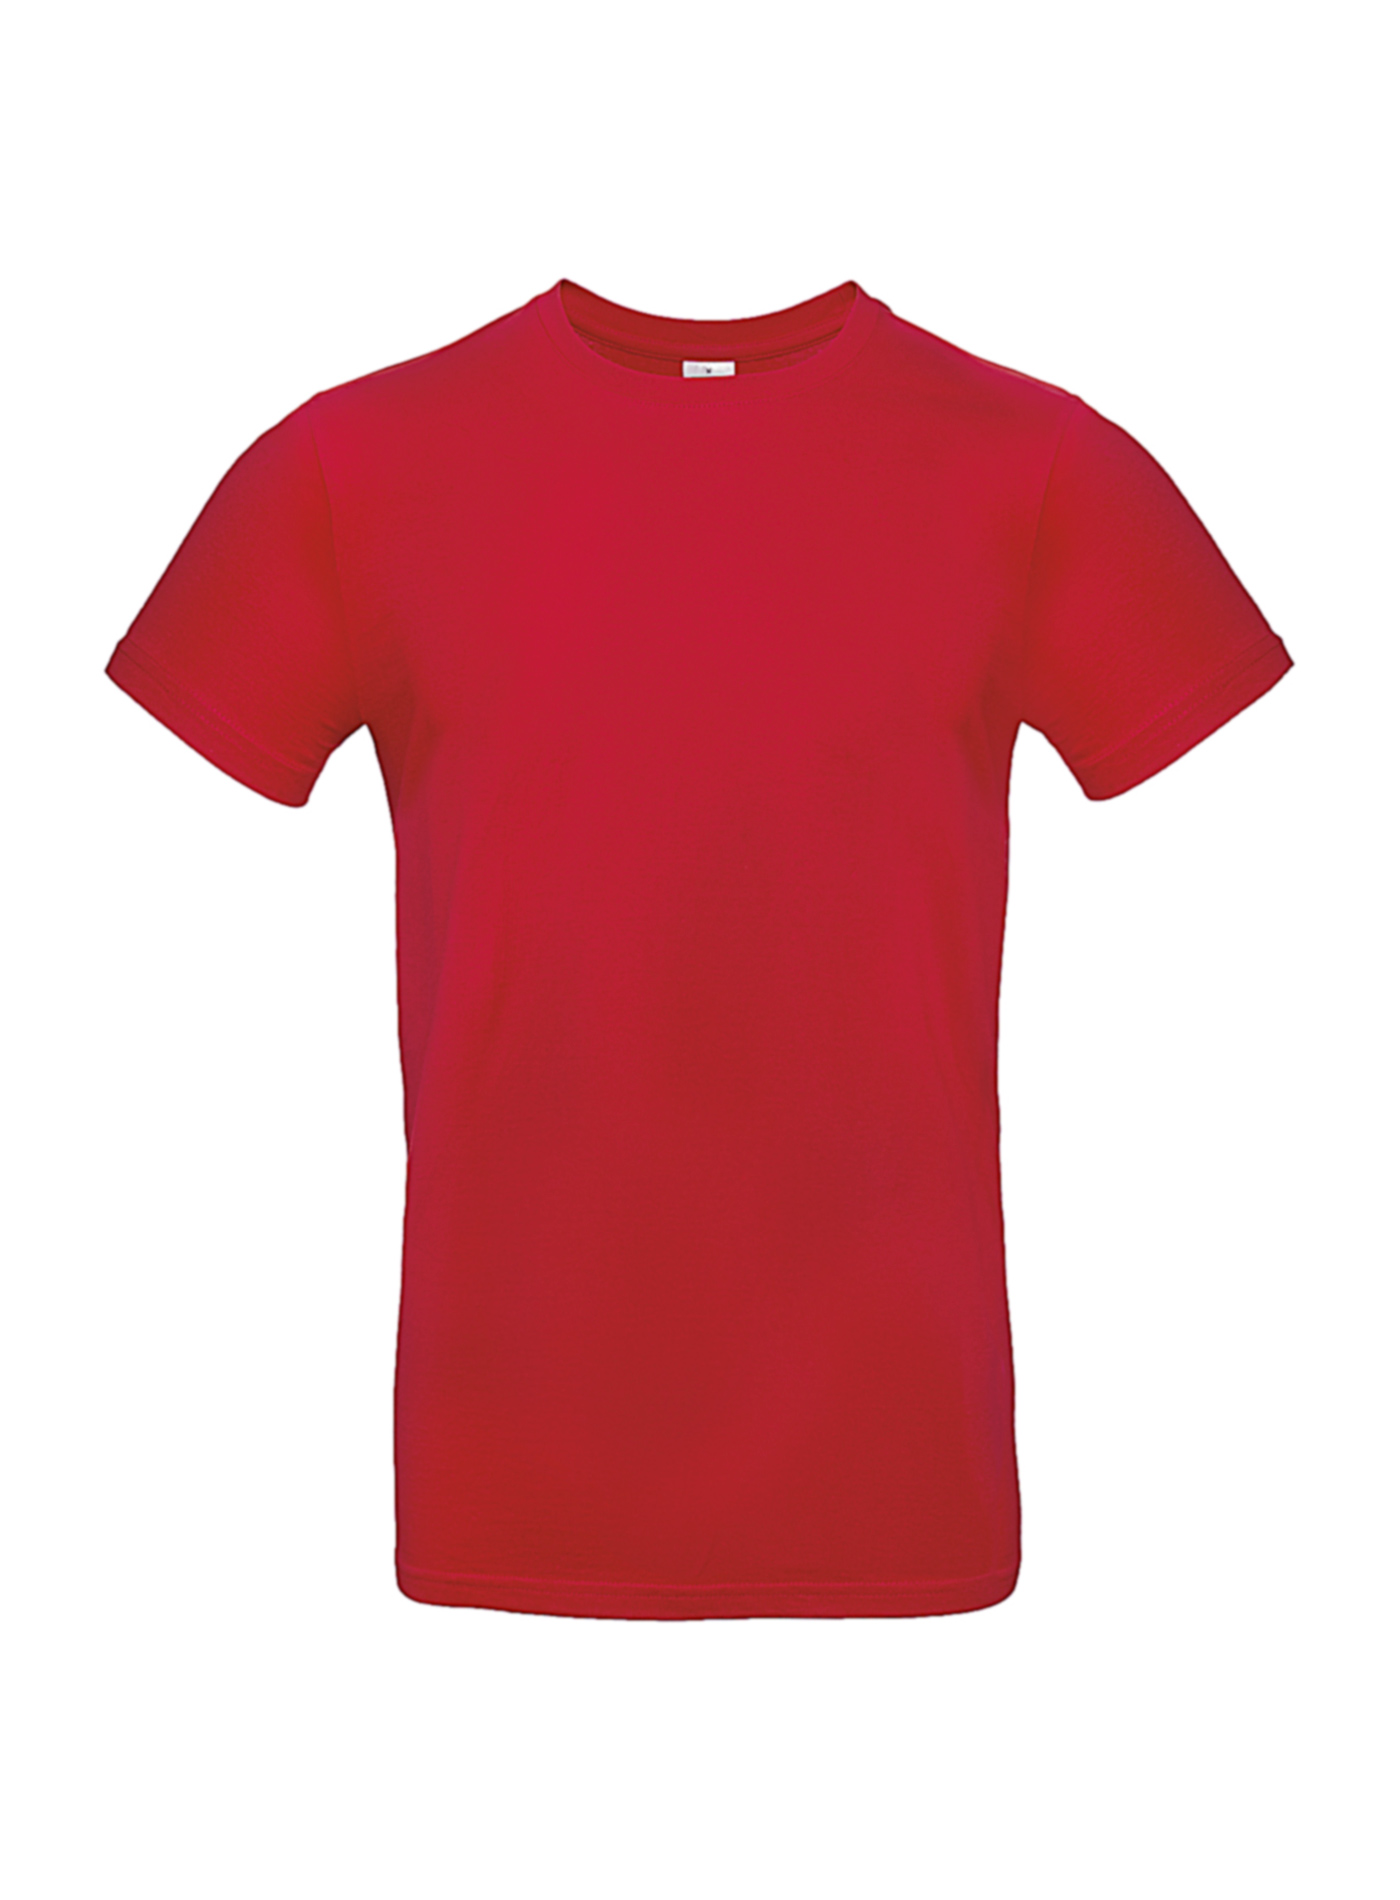 Silnější bavlněné pánské tričko - Rudě červená XL